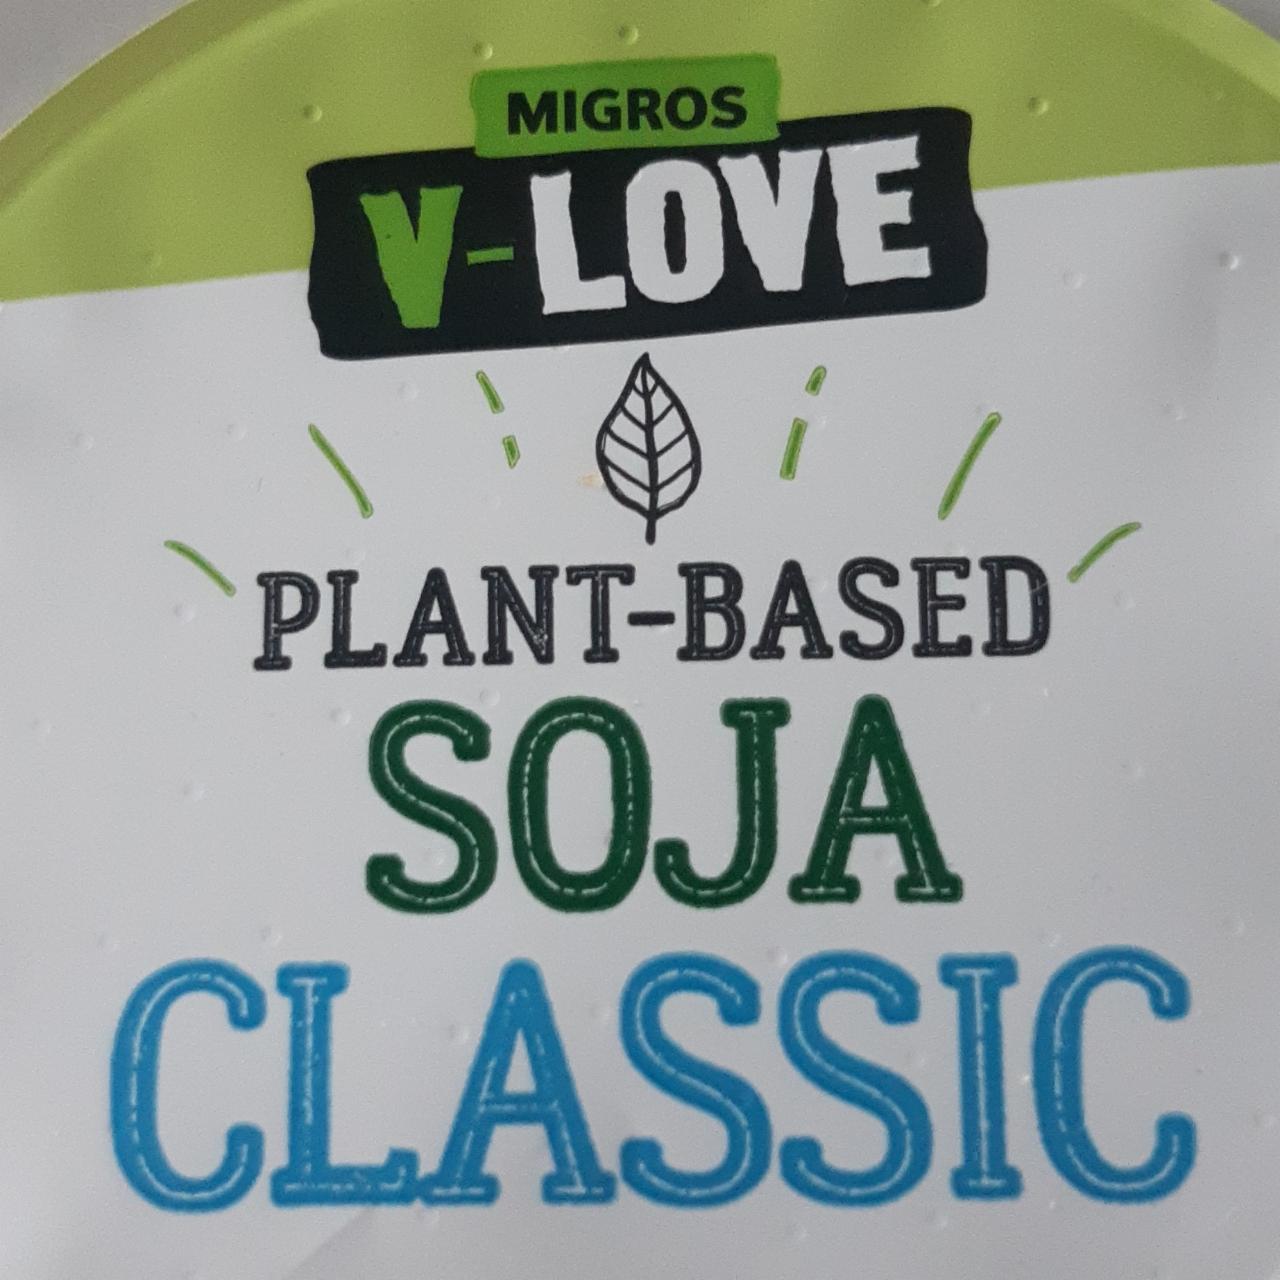 Fotografie - V-Love Plant-Based Soja Classic Migros